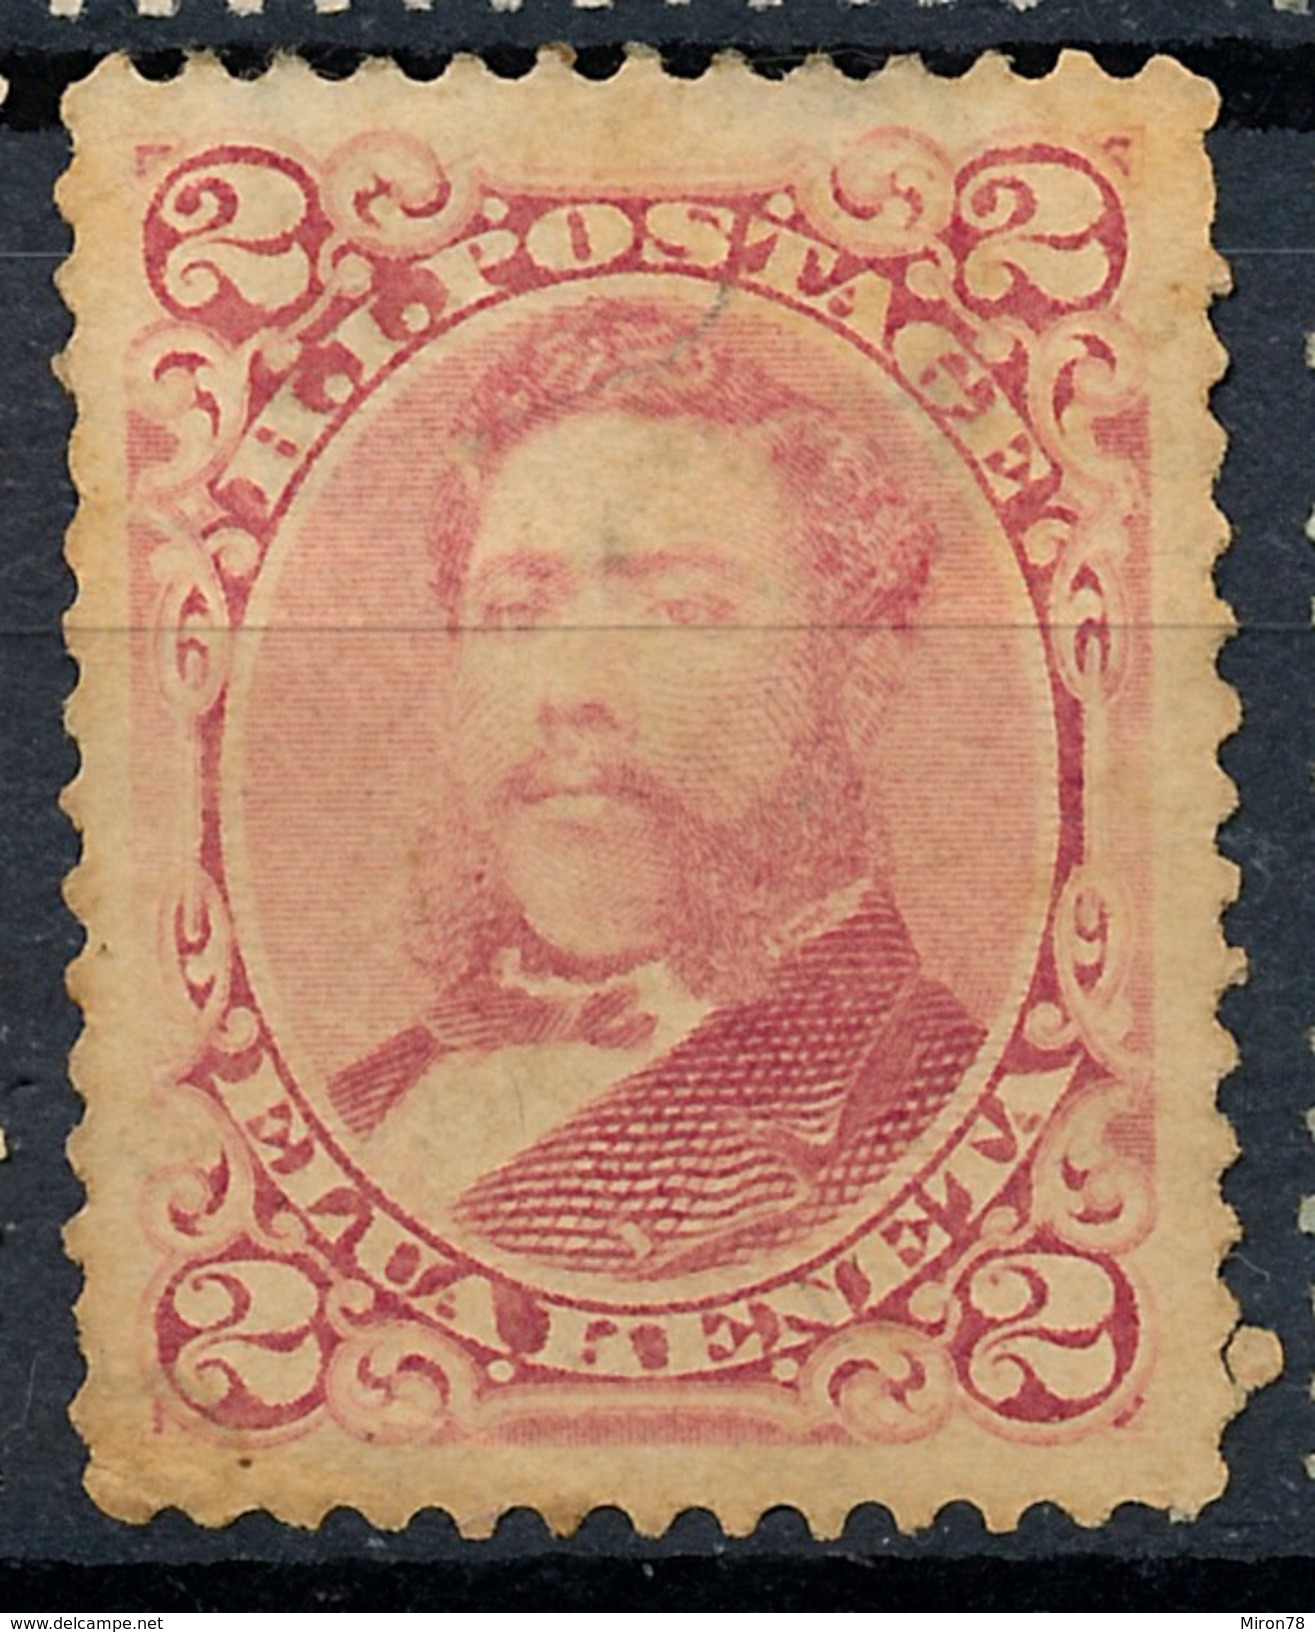 Stamp Hawaii 1883 Mint 2c Lot#14 - Hawaii